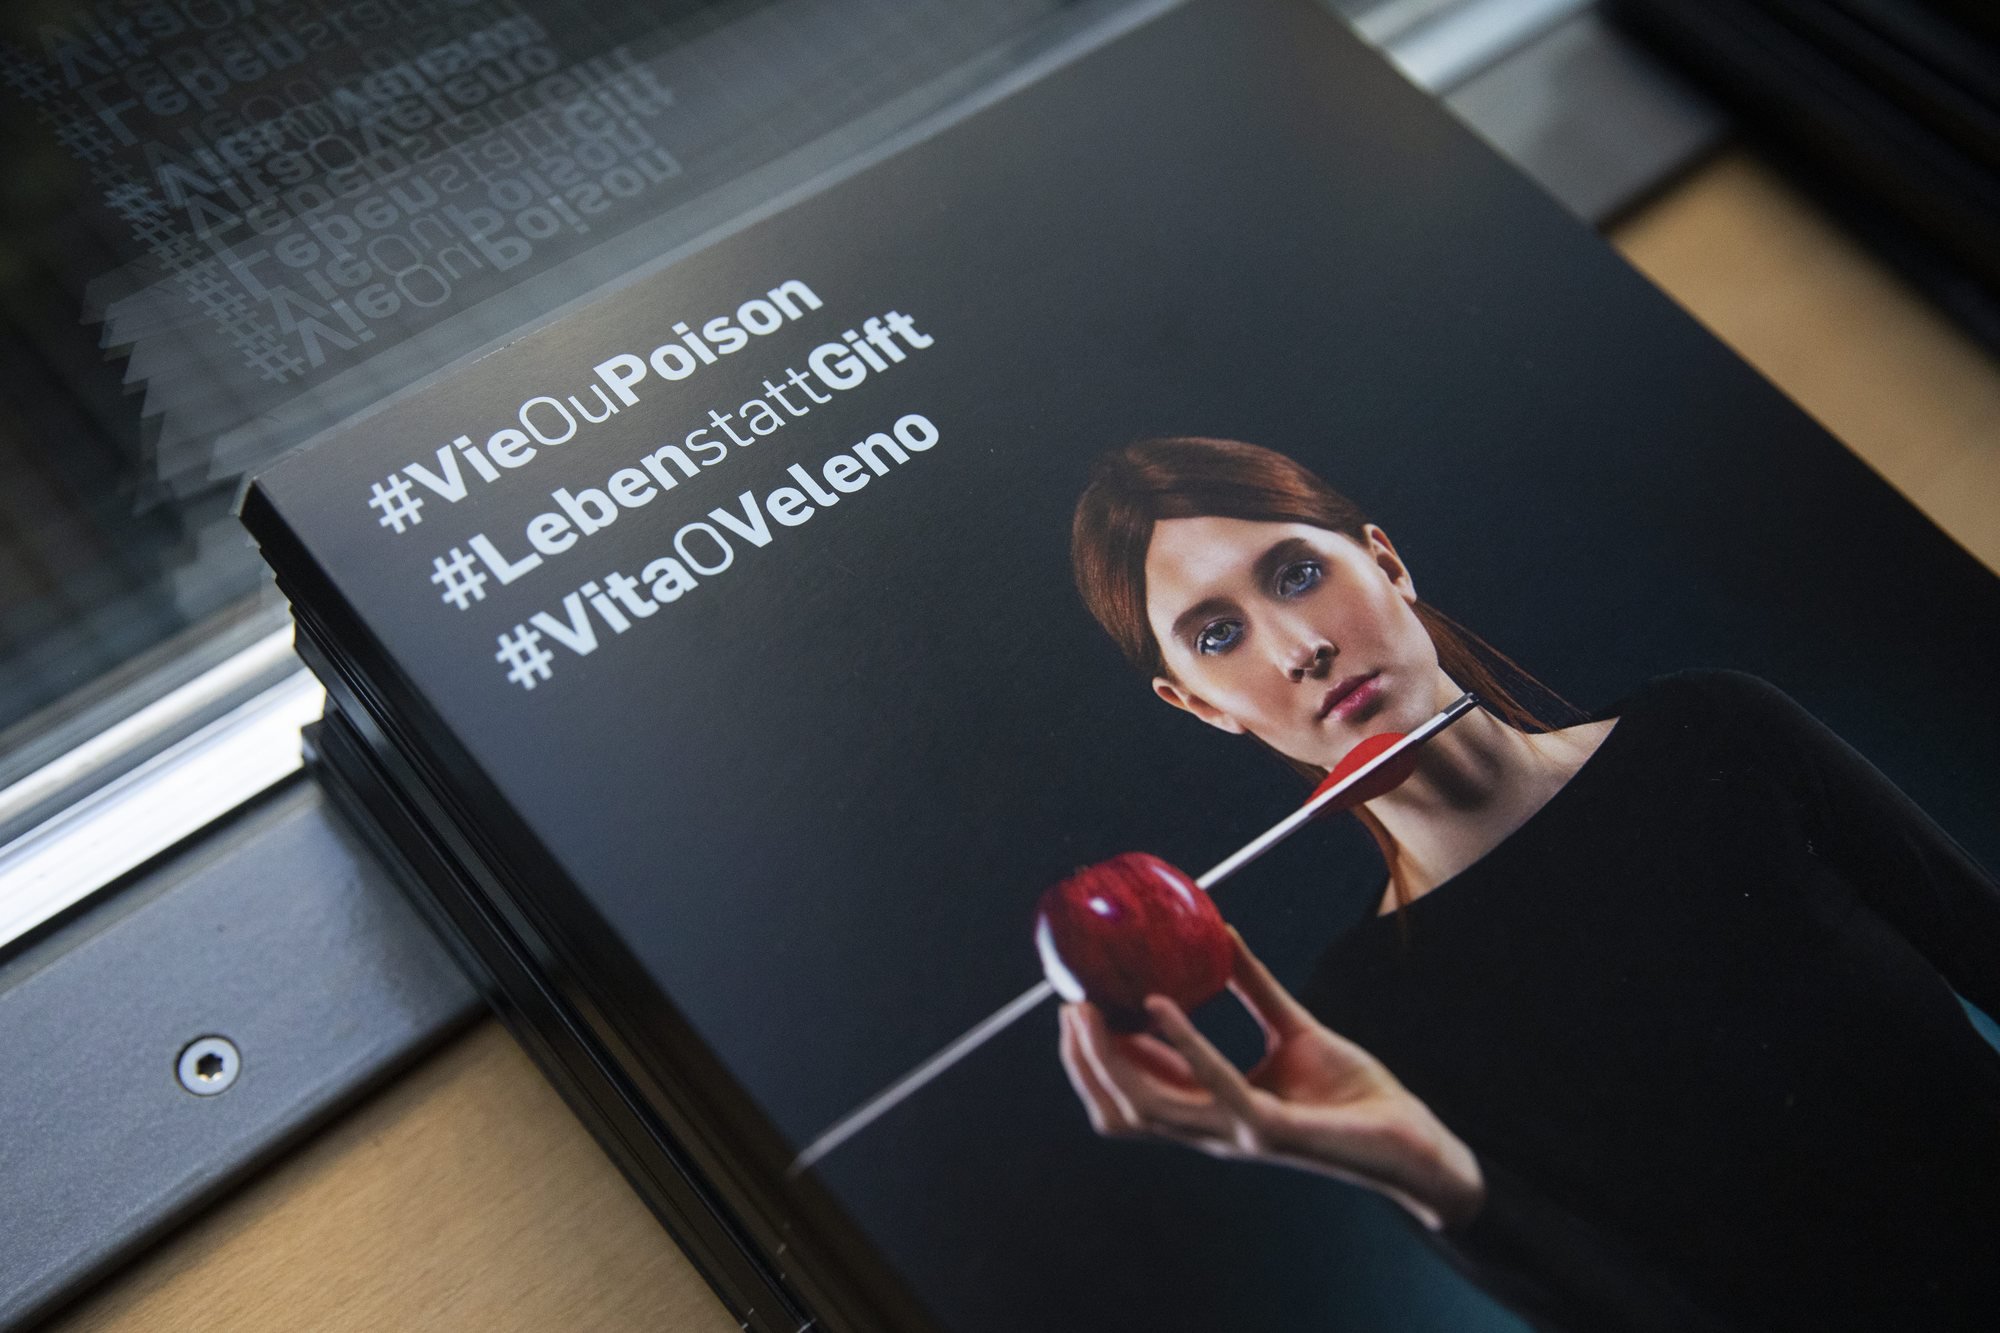 La brochure #VieOuPoison de l'initiative populaire, présentée lors de la conférence de presse ce lundi.